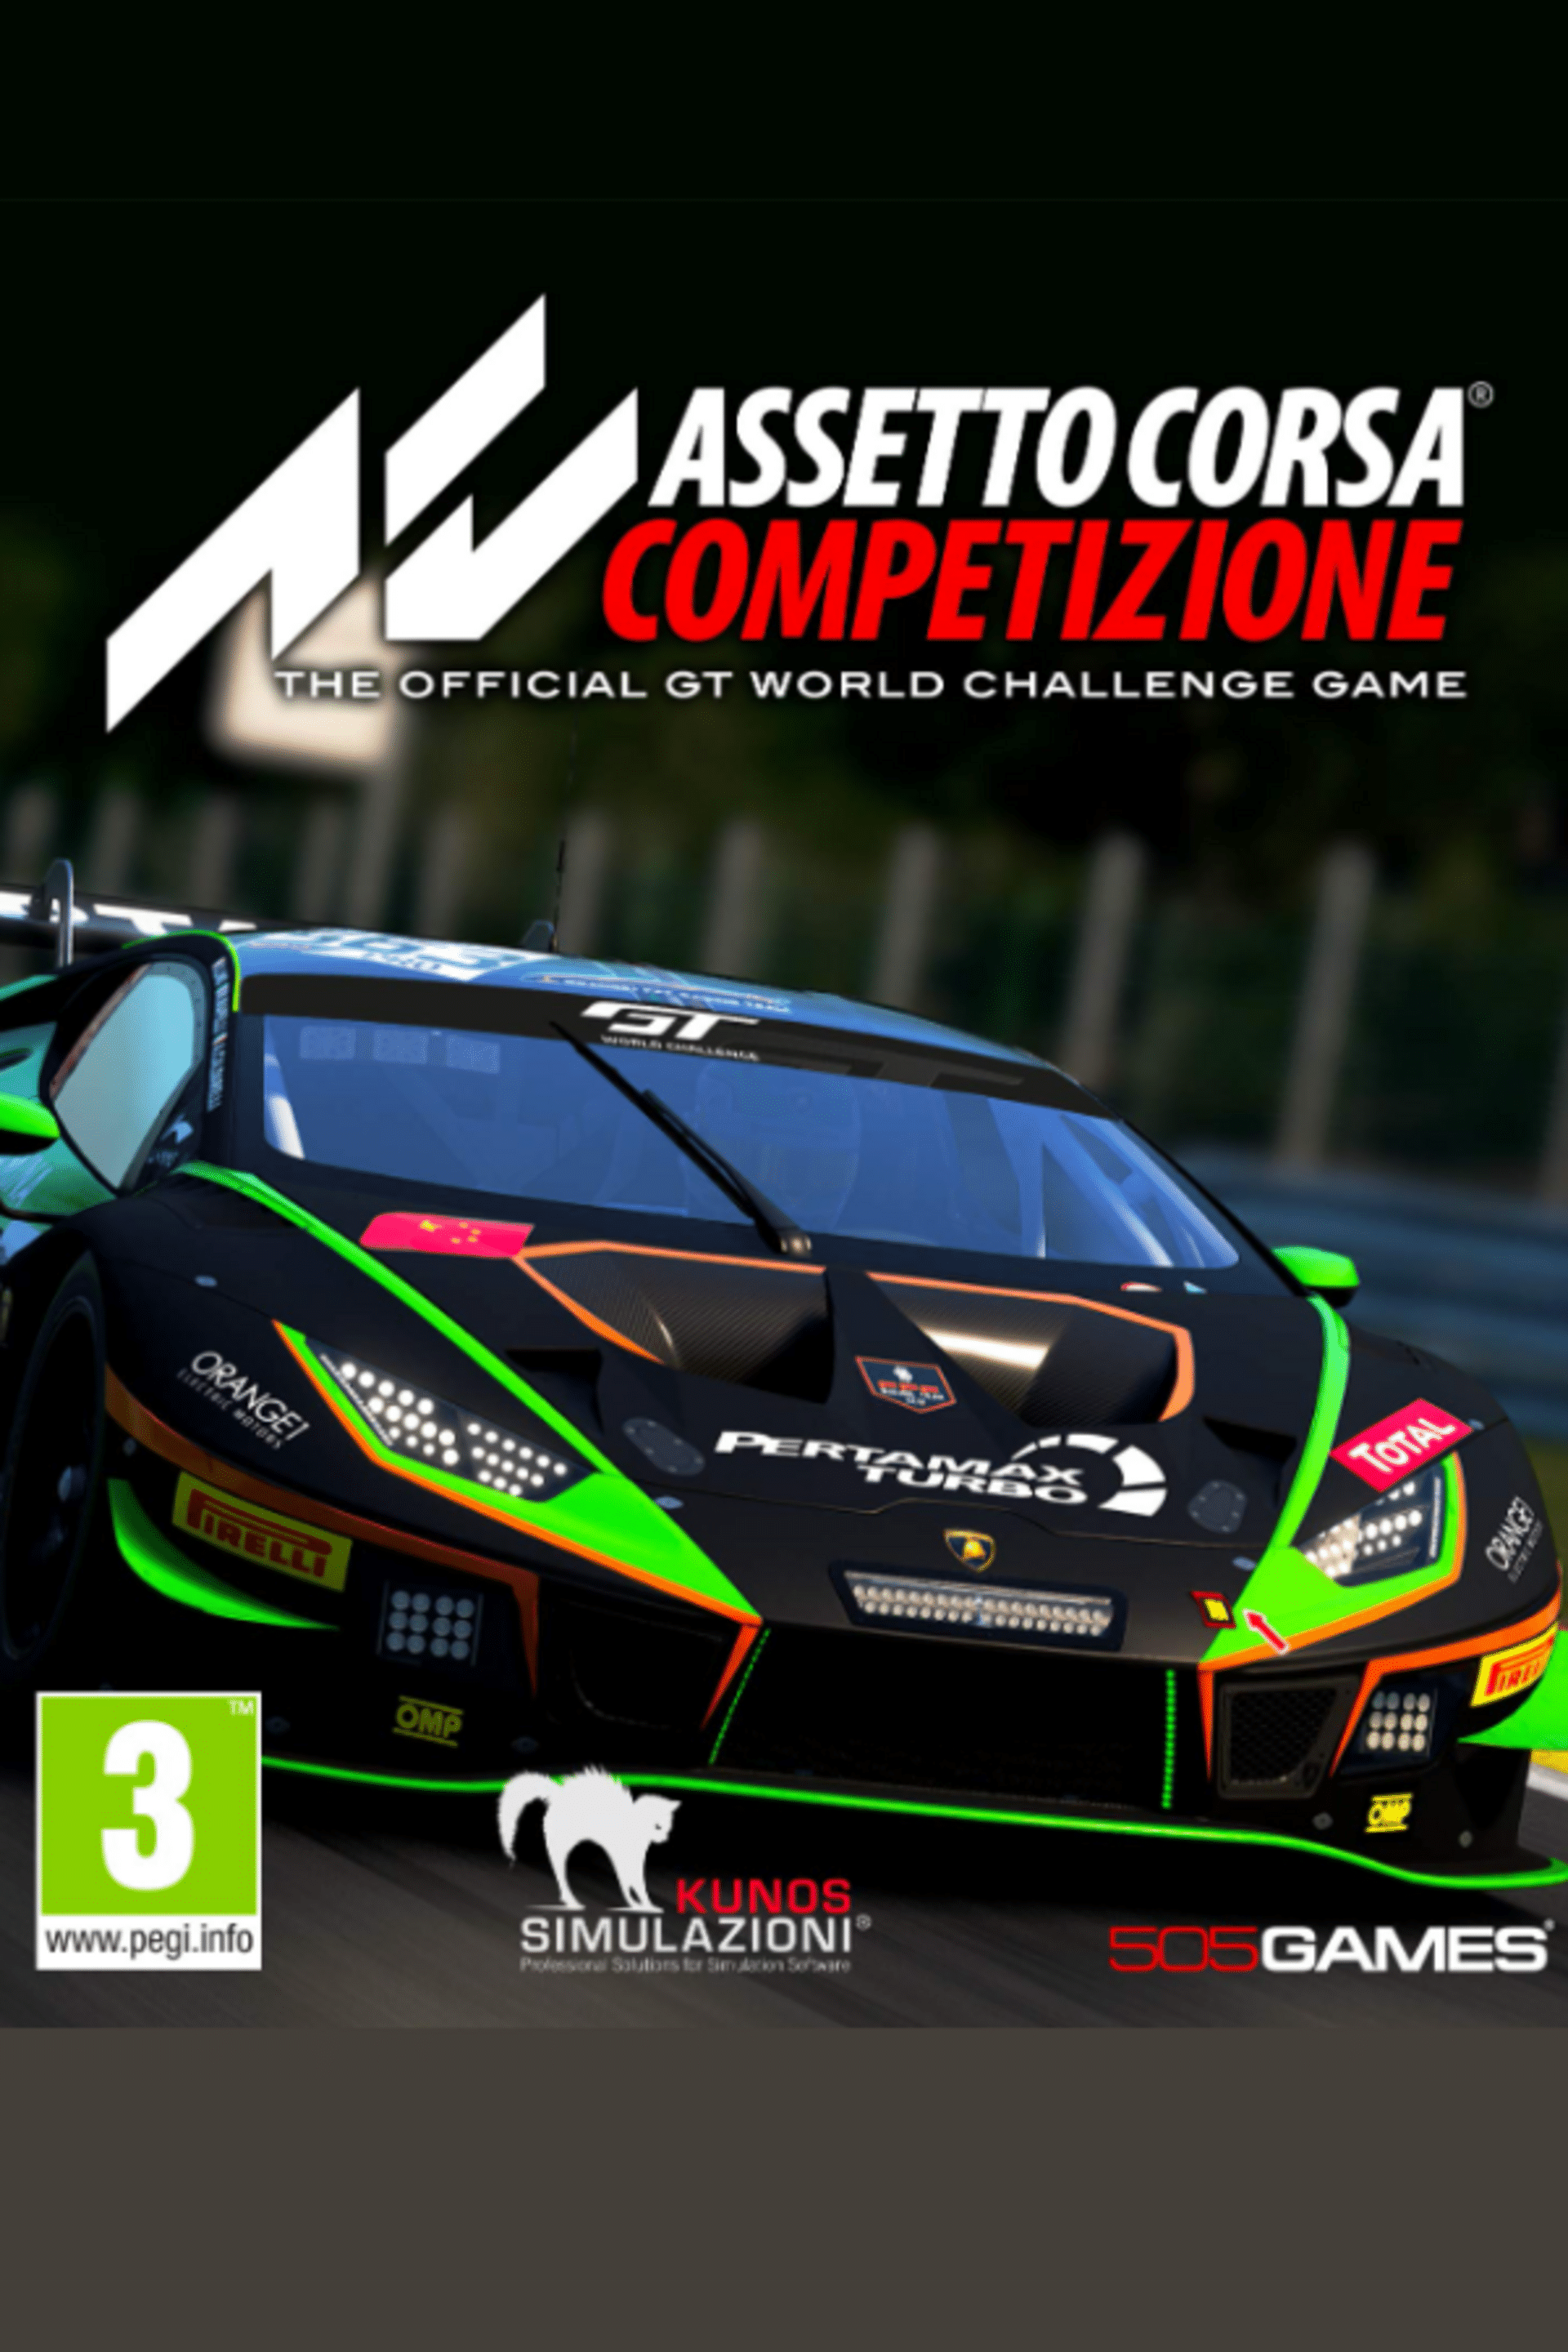 Assetto Corsa Competizione • Requisitos mínimos e recomendados do jogo